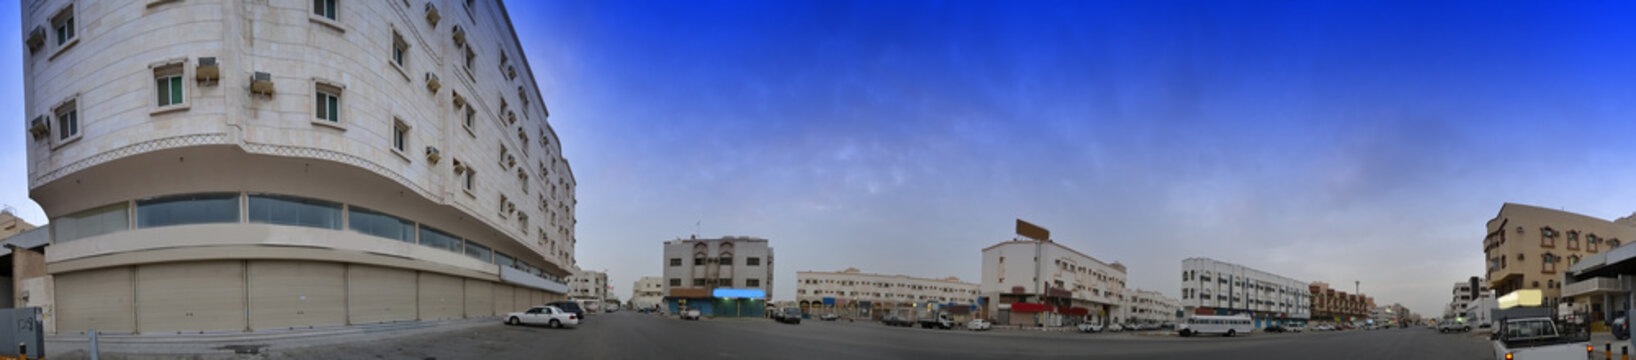 street in south jeddah